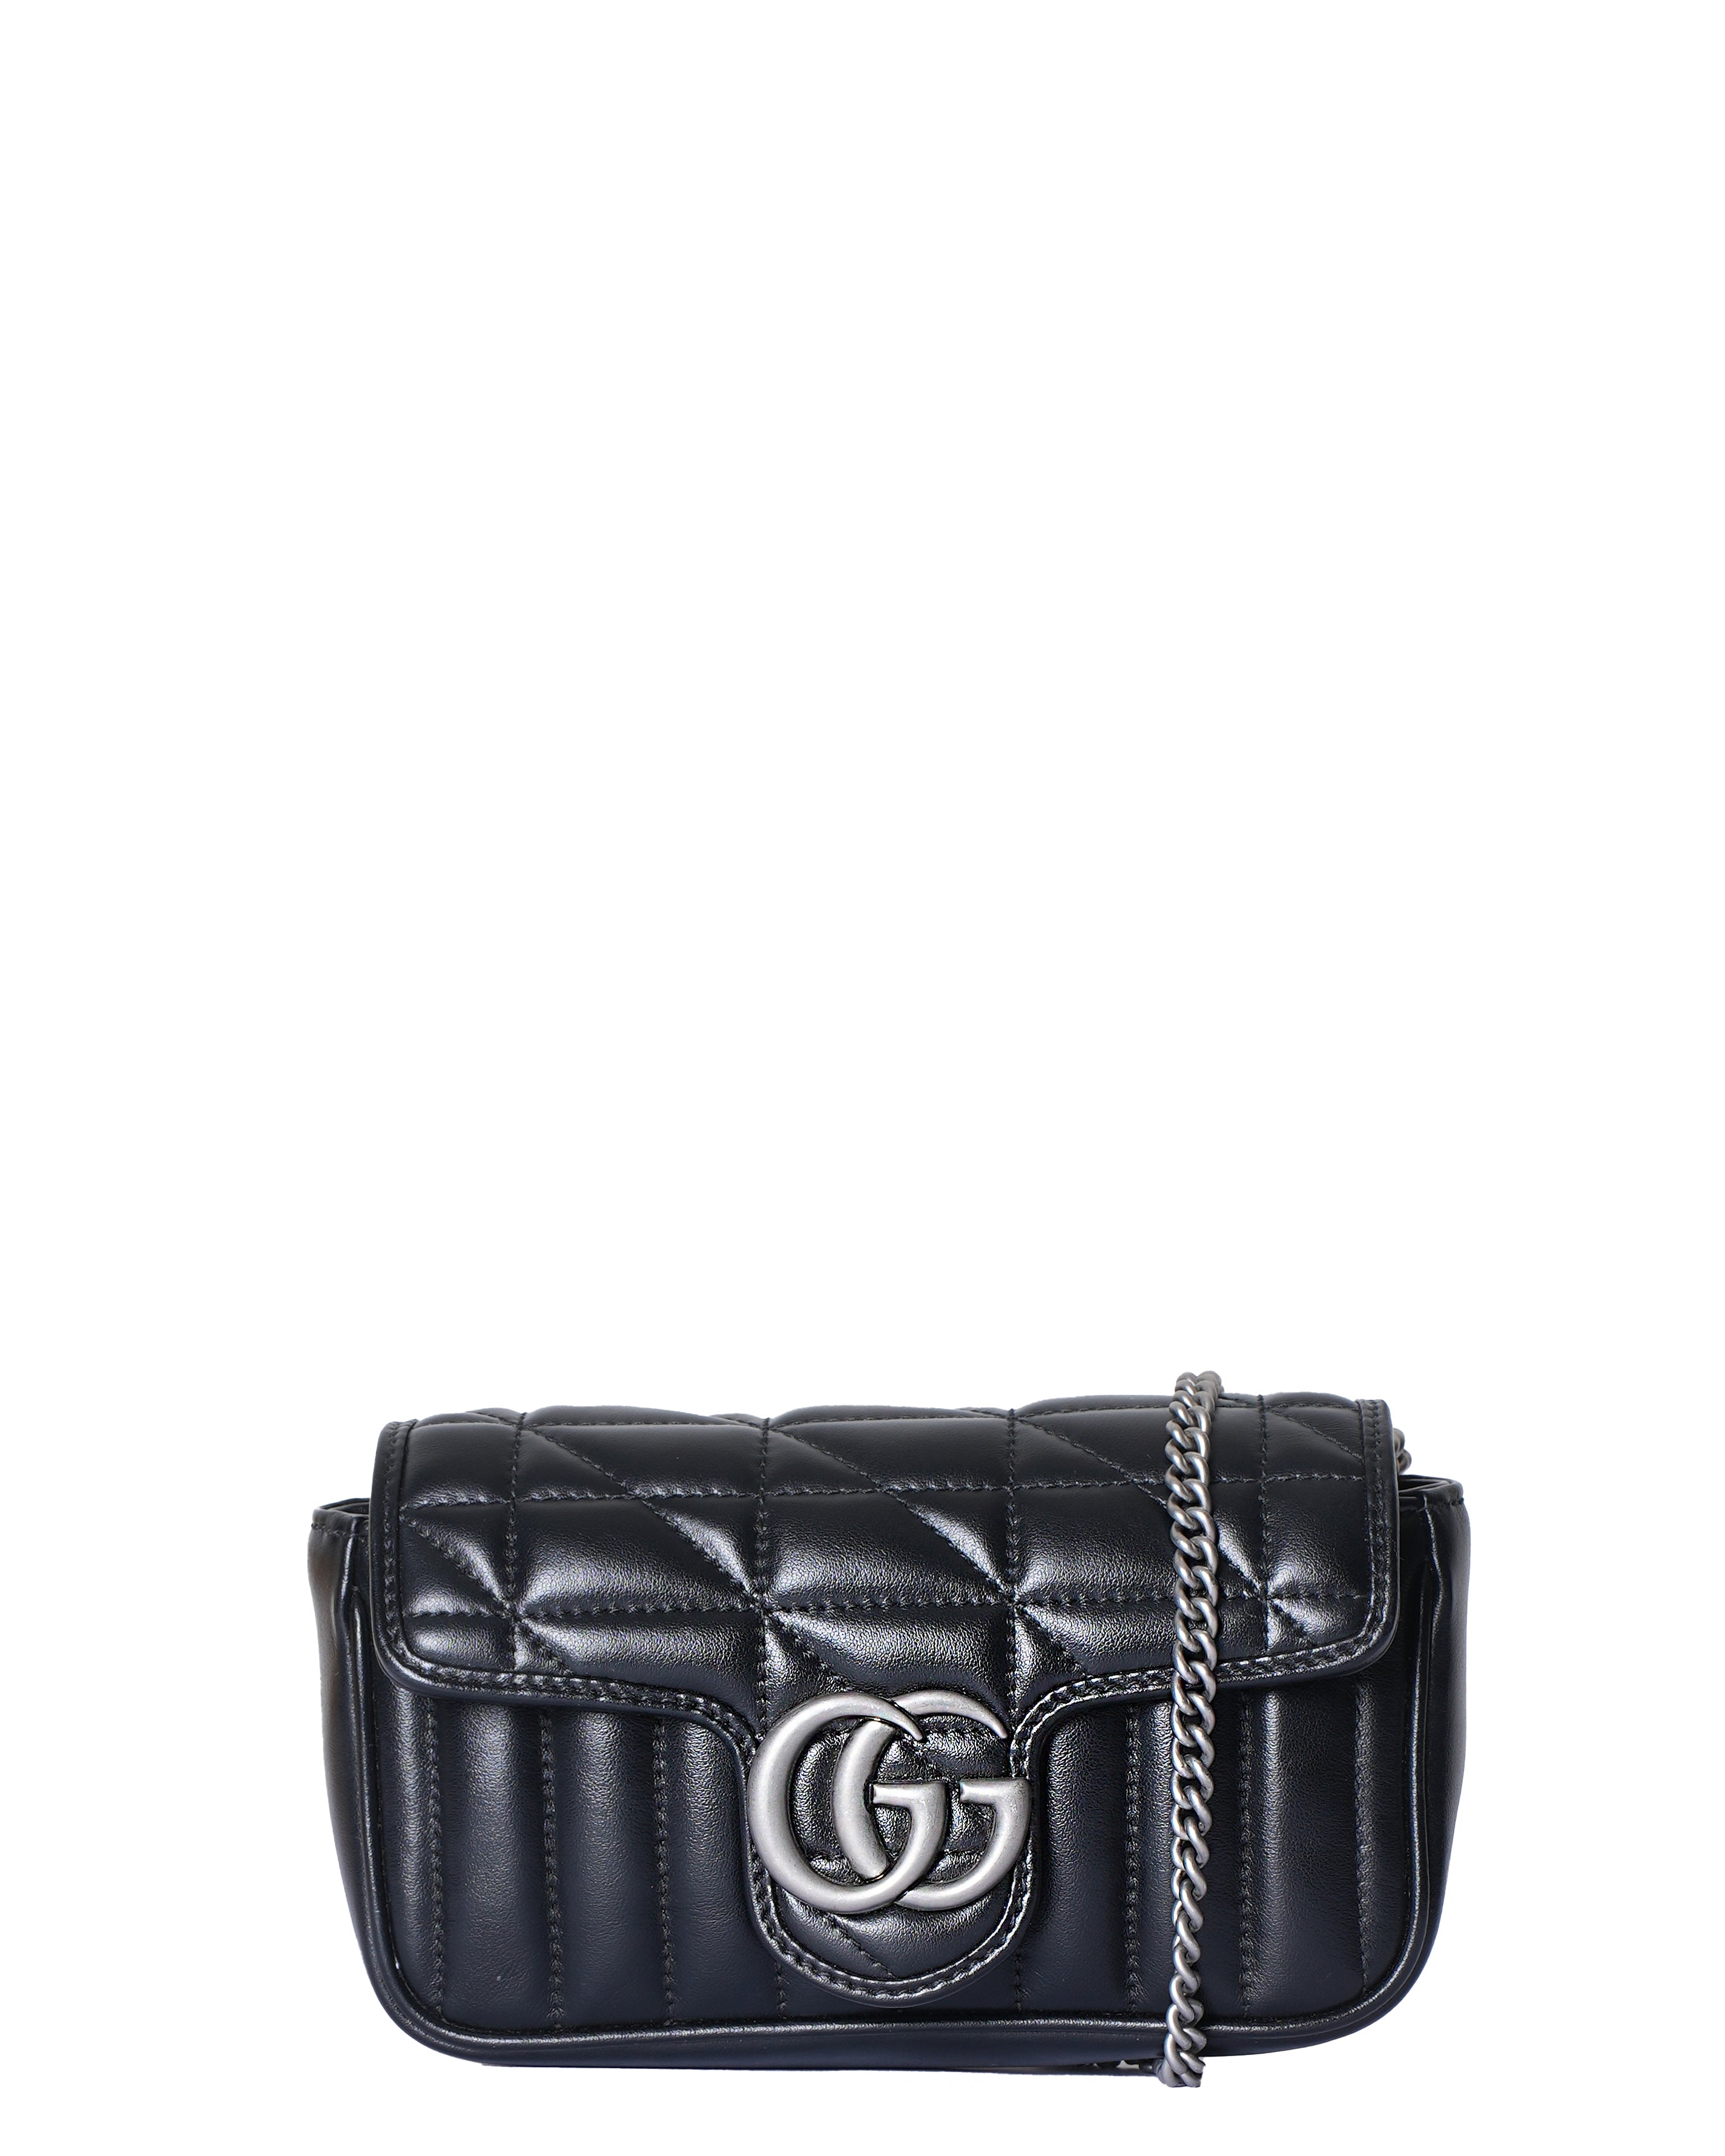 Gucci Aria Super Mini GG Marmont Shoulder Bag